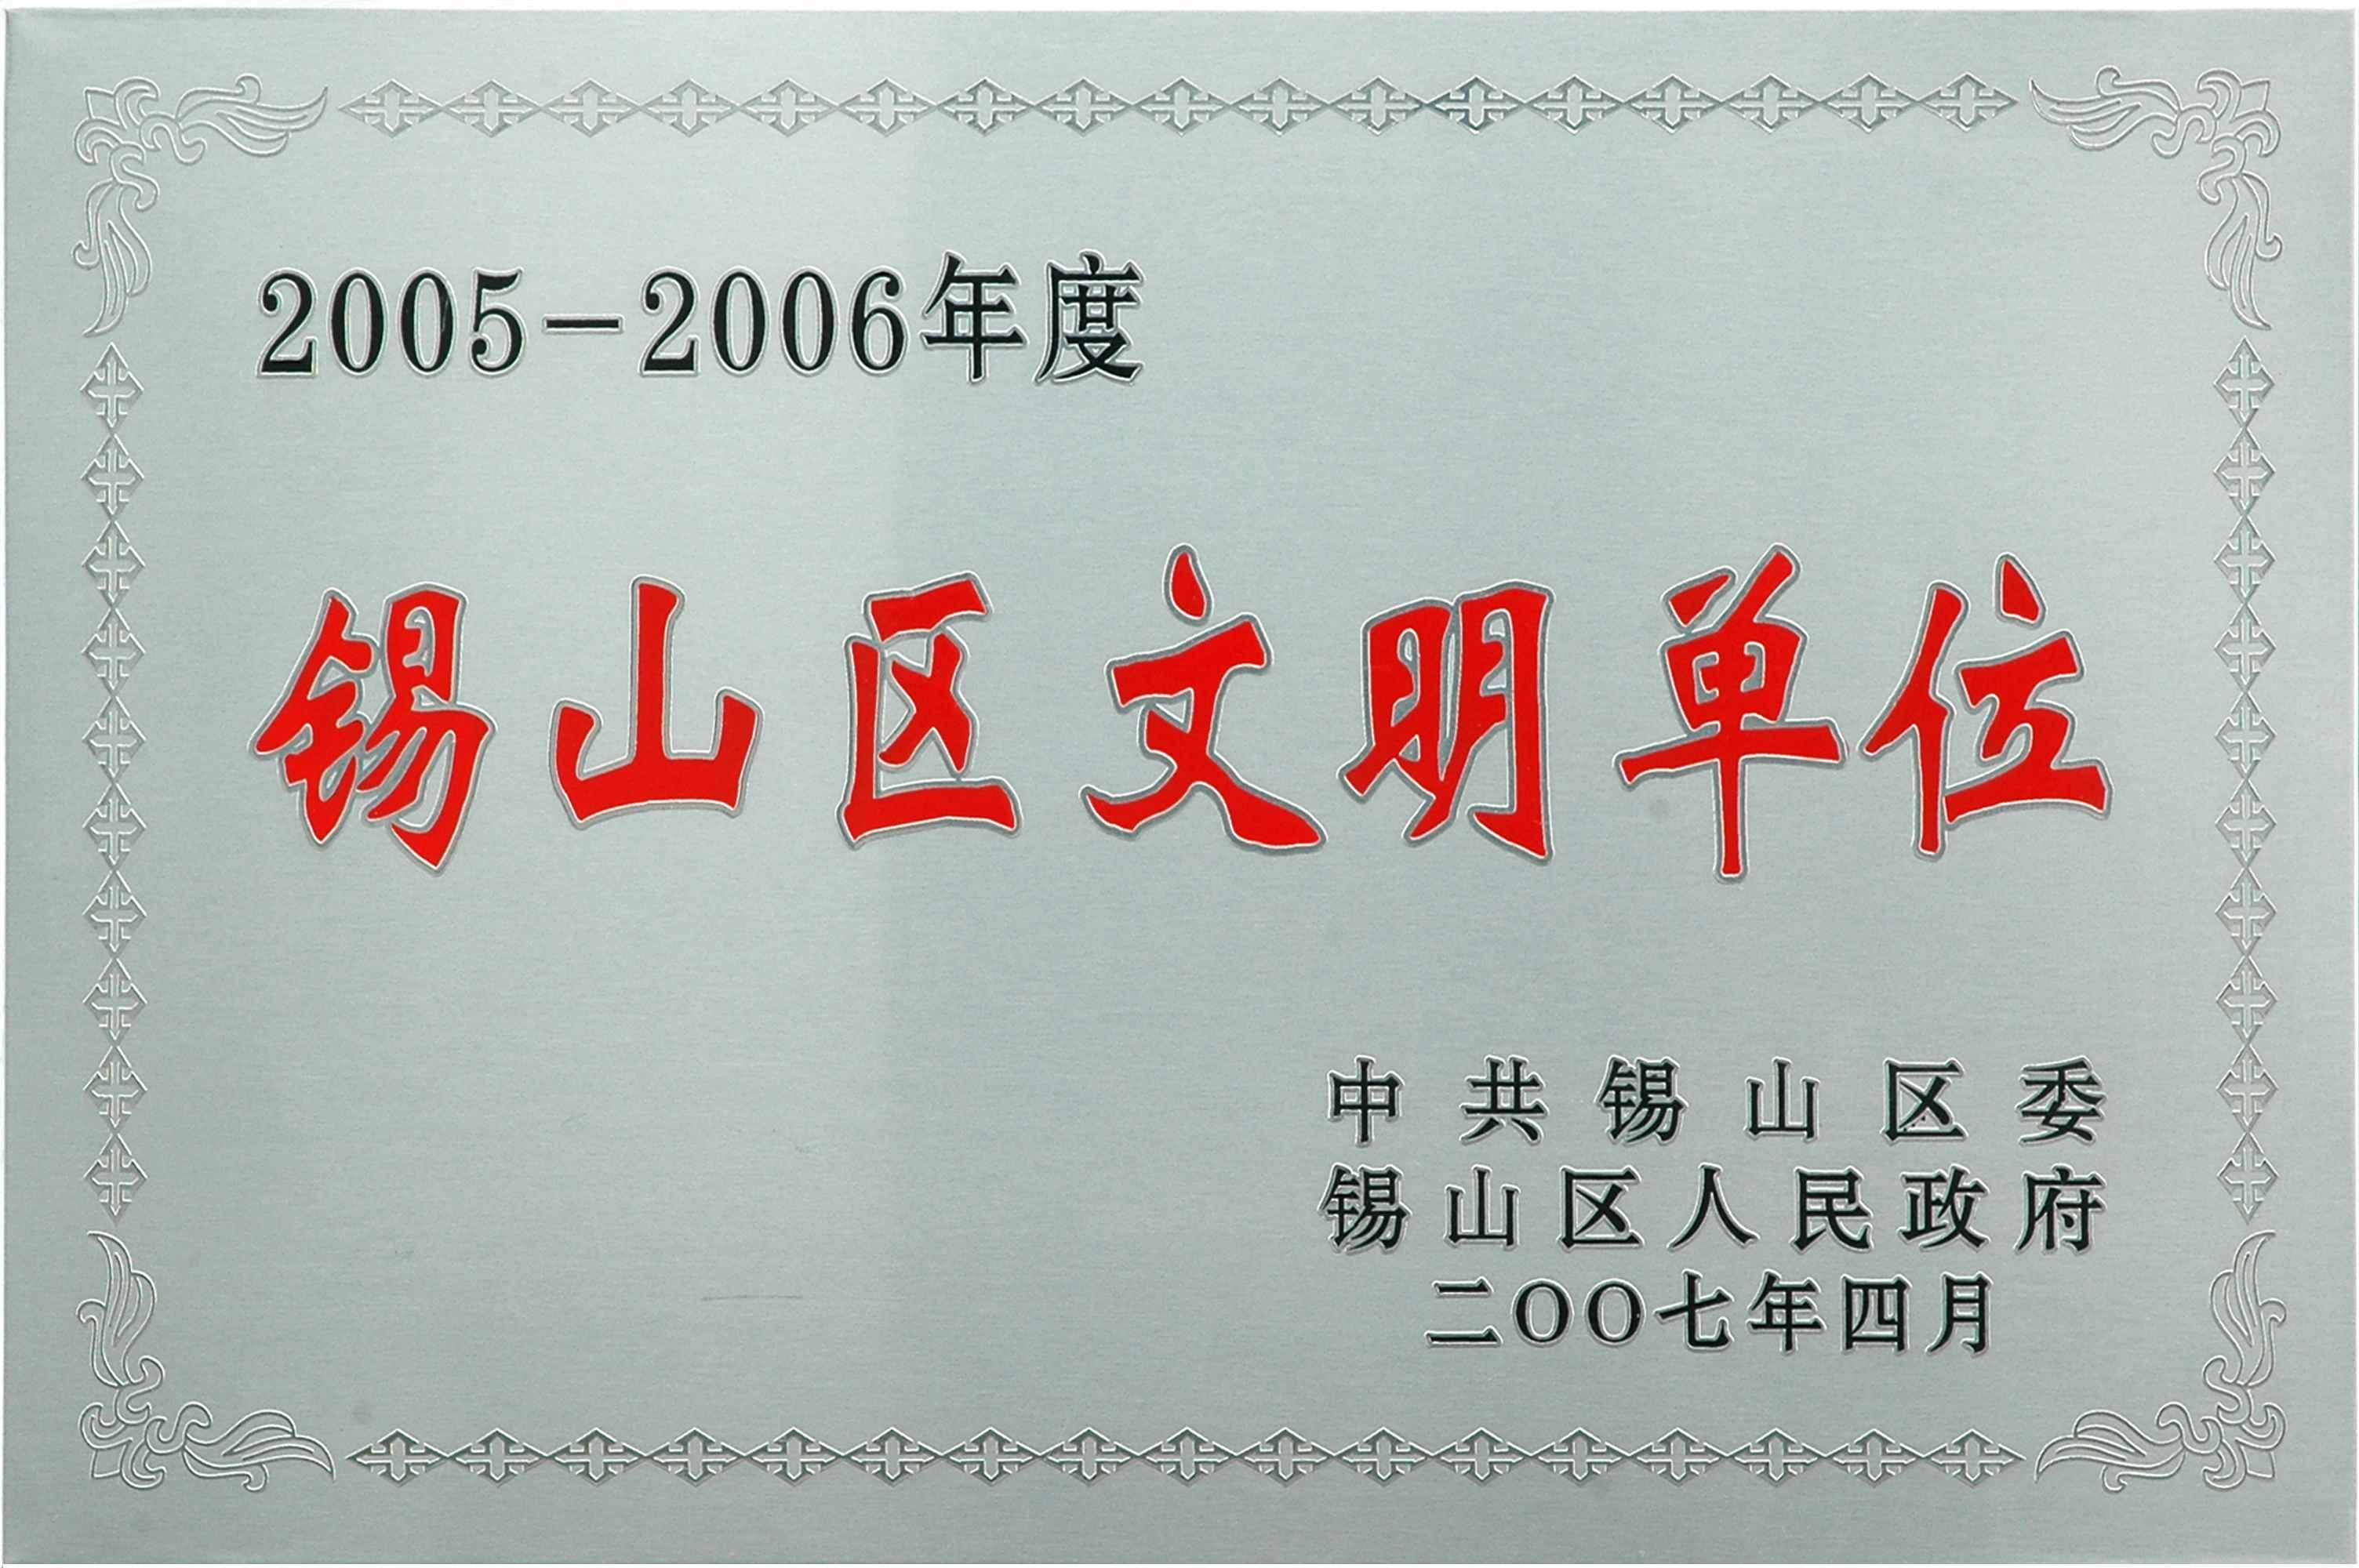 2005-2006年锡山区文明单位